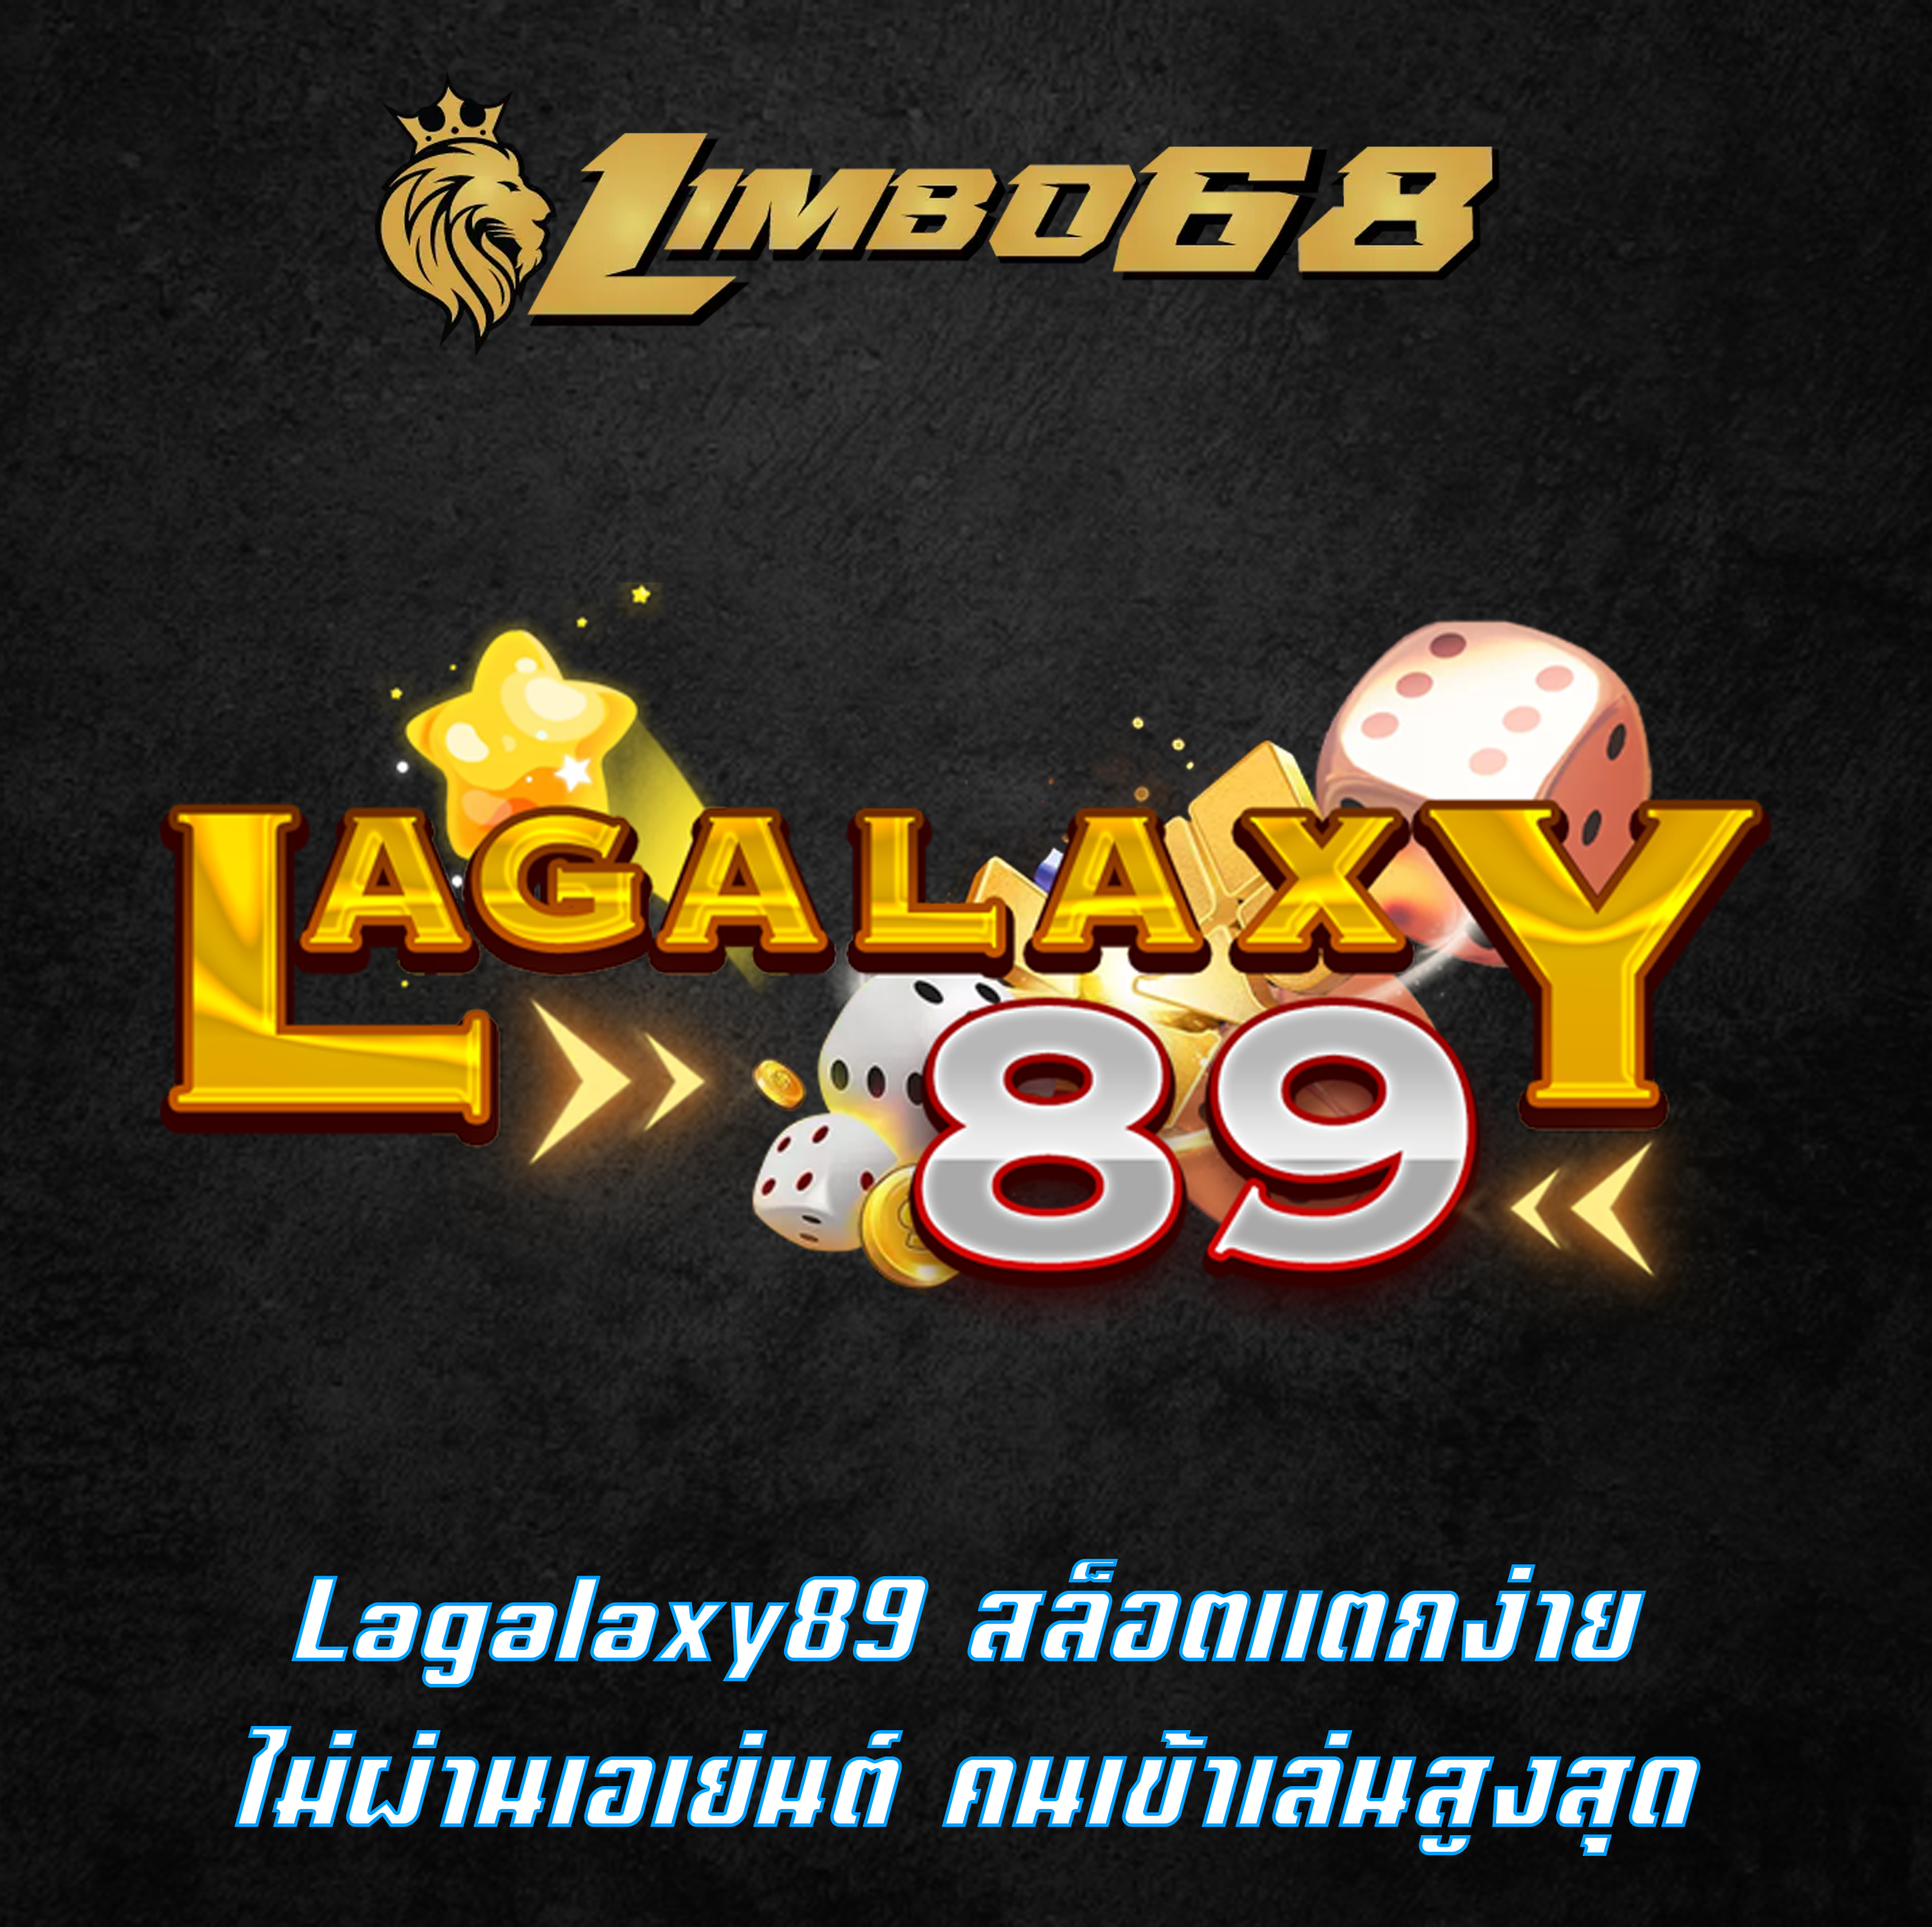 Lagalaxy89